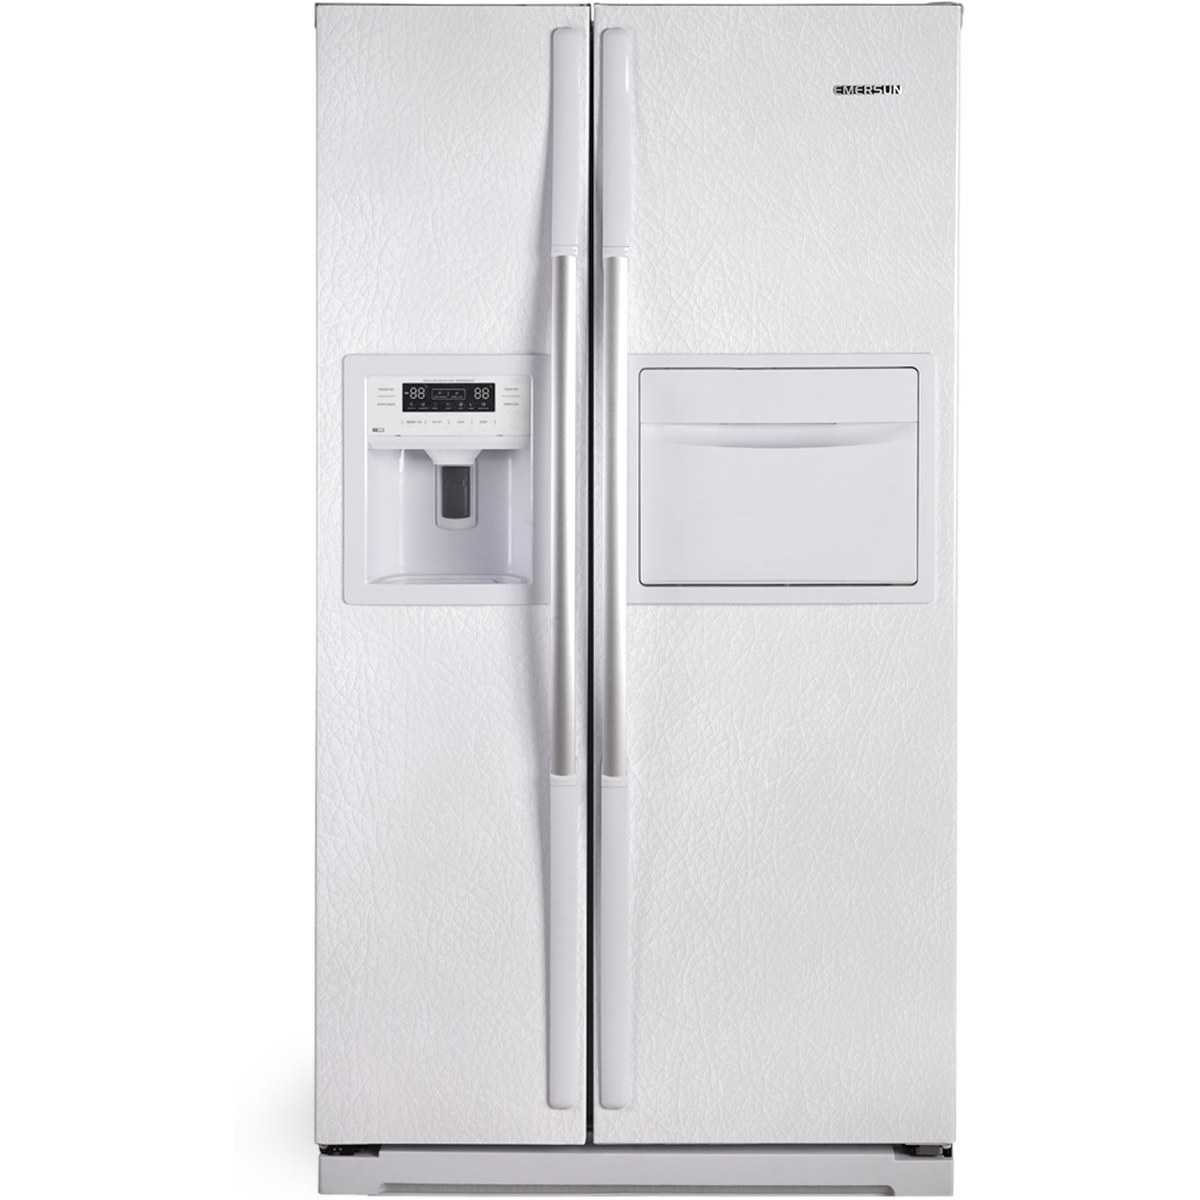 خرید و قیمت یخچال و فریز ساید بای ساید امرسان مدل NRF3292D ا EmersunNRF3292D Refrigerator | ترب